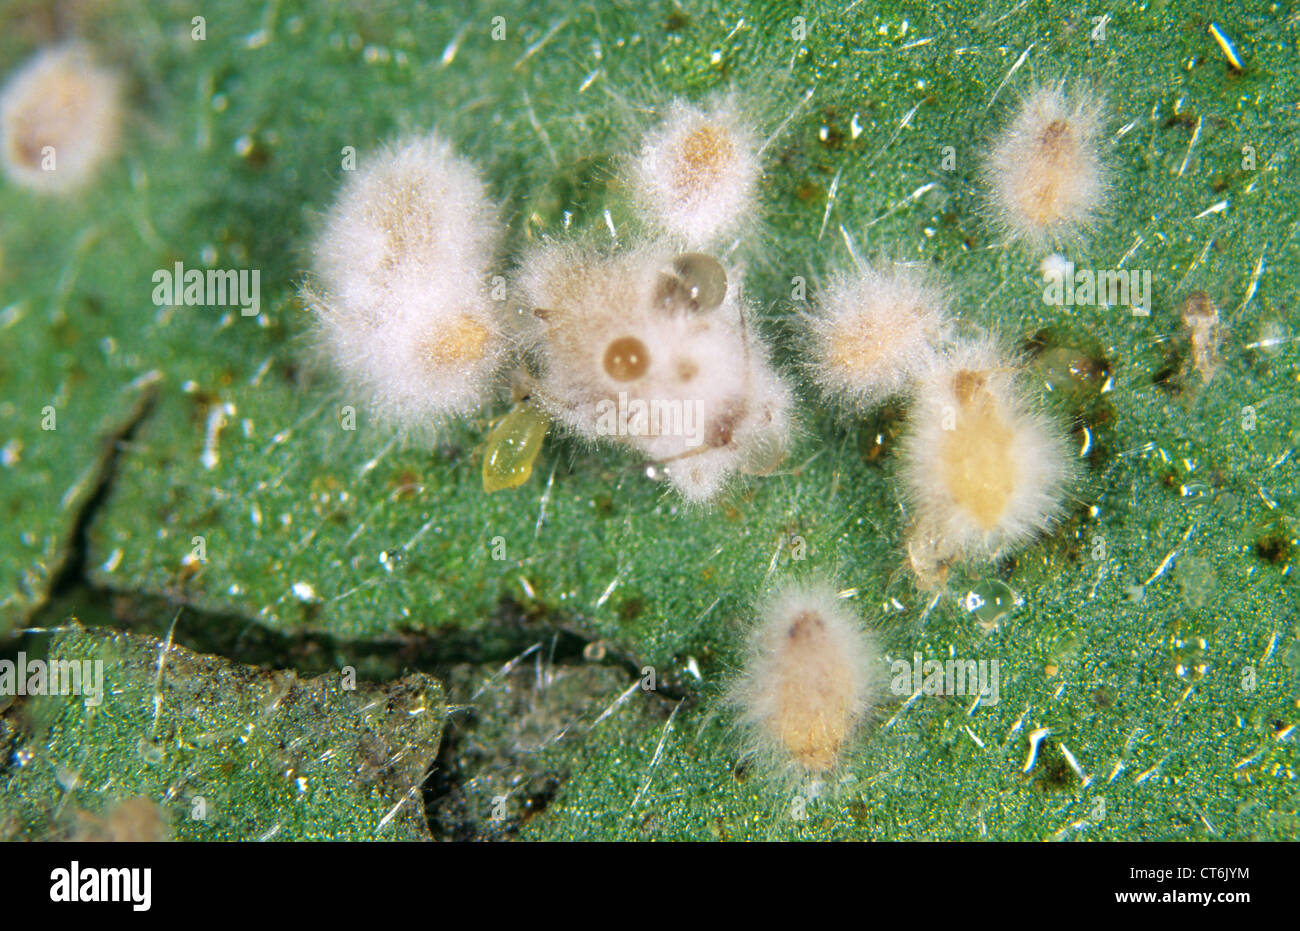 Development of entomopathogenic fungus Lecanicillium sp. or Verticillium lecanii on aphid host pests Stock Photo